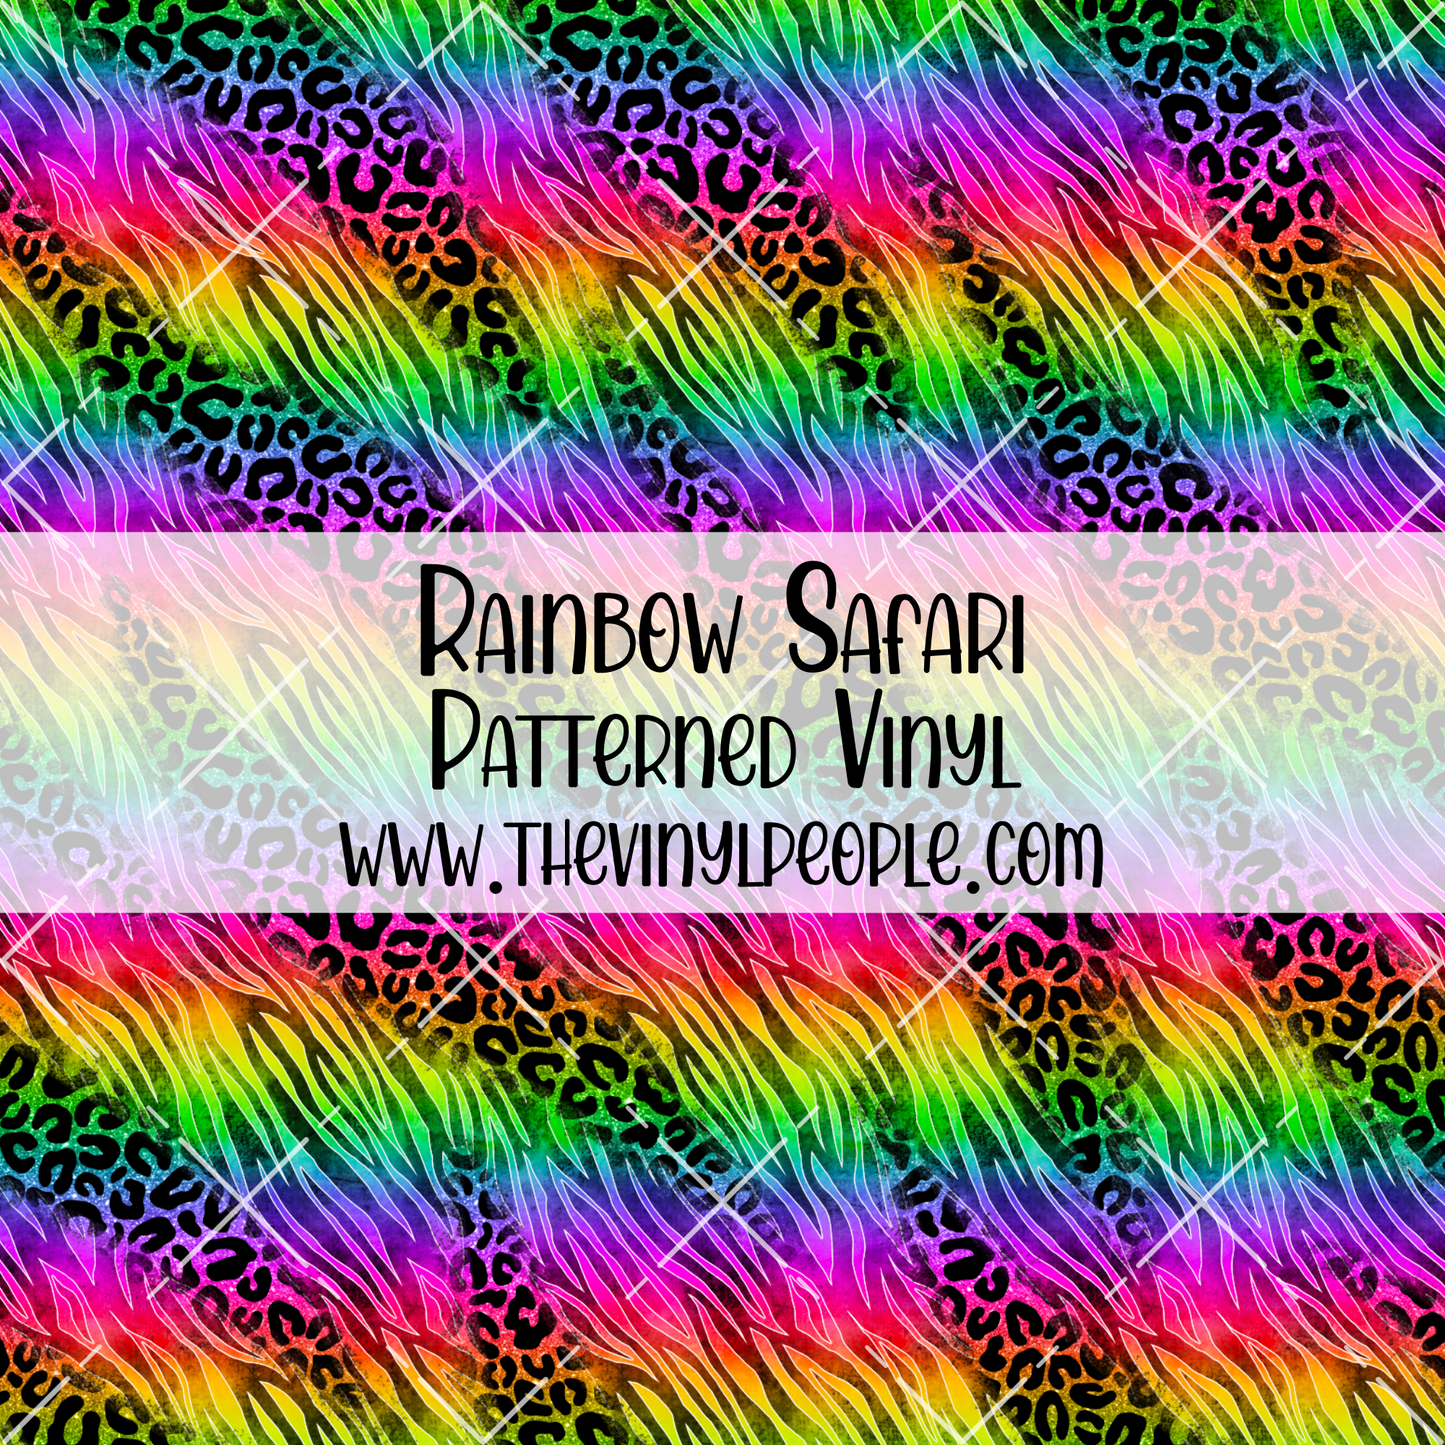 Rainbow Safari Patterned Vinyl